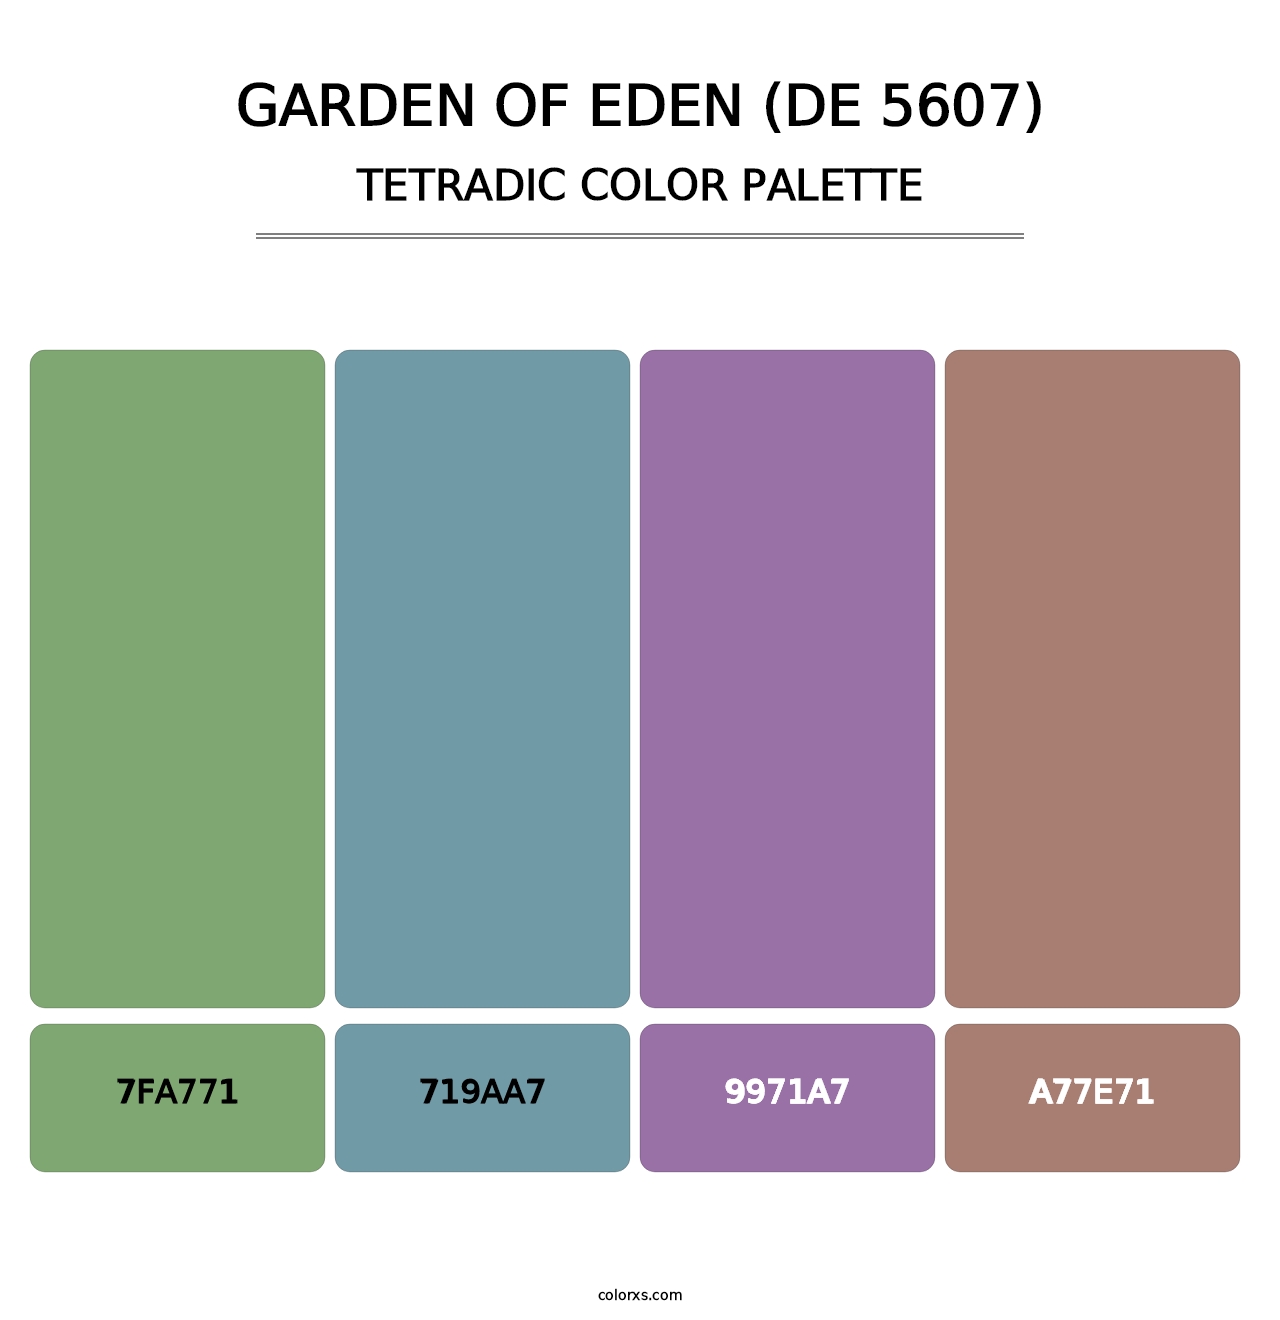 Garden of Eden (DE 5607) - Tetradic Color Palette